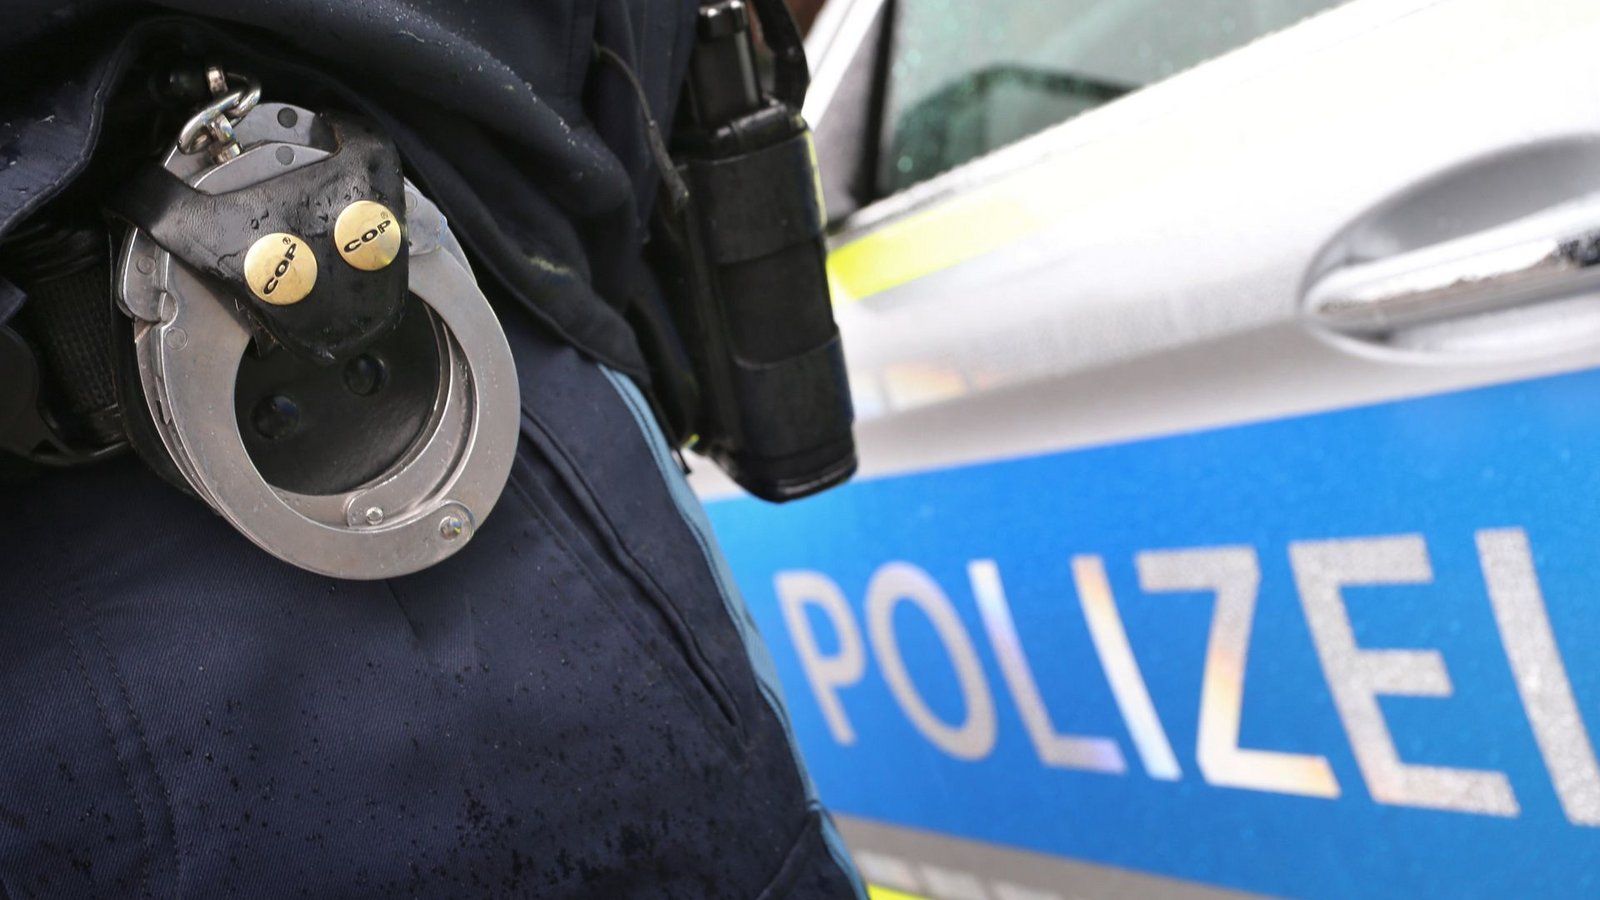 Die Polizei konnte die Frau anhand des Kfz-Kennzeichens schnell ermittelnFoto: dpa/Karl-Josef Hildenbrand